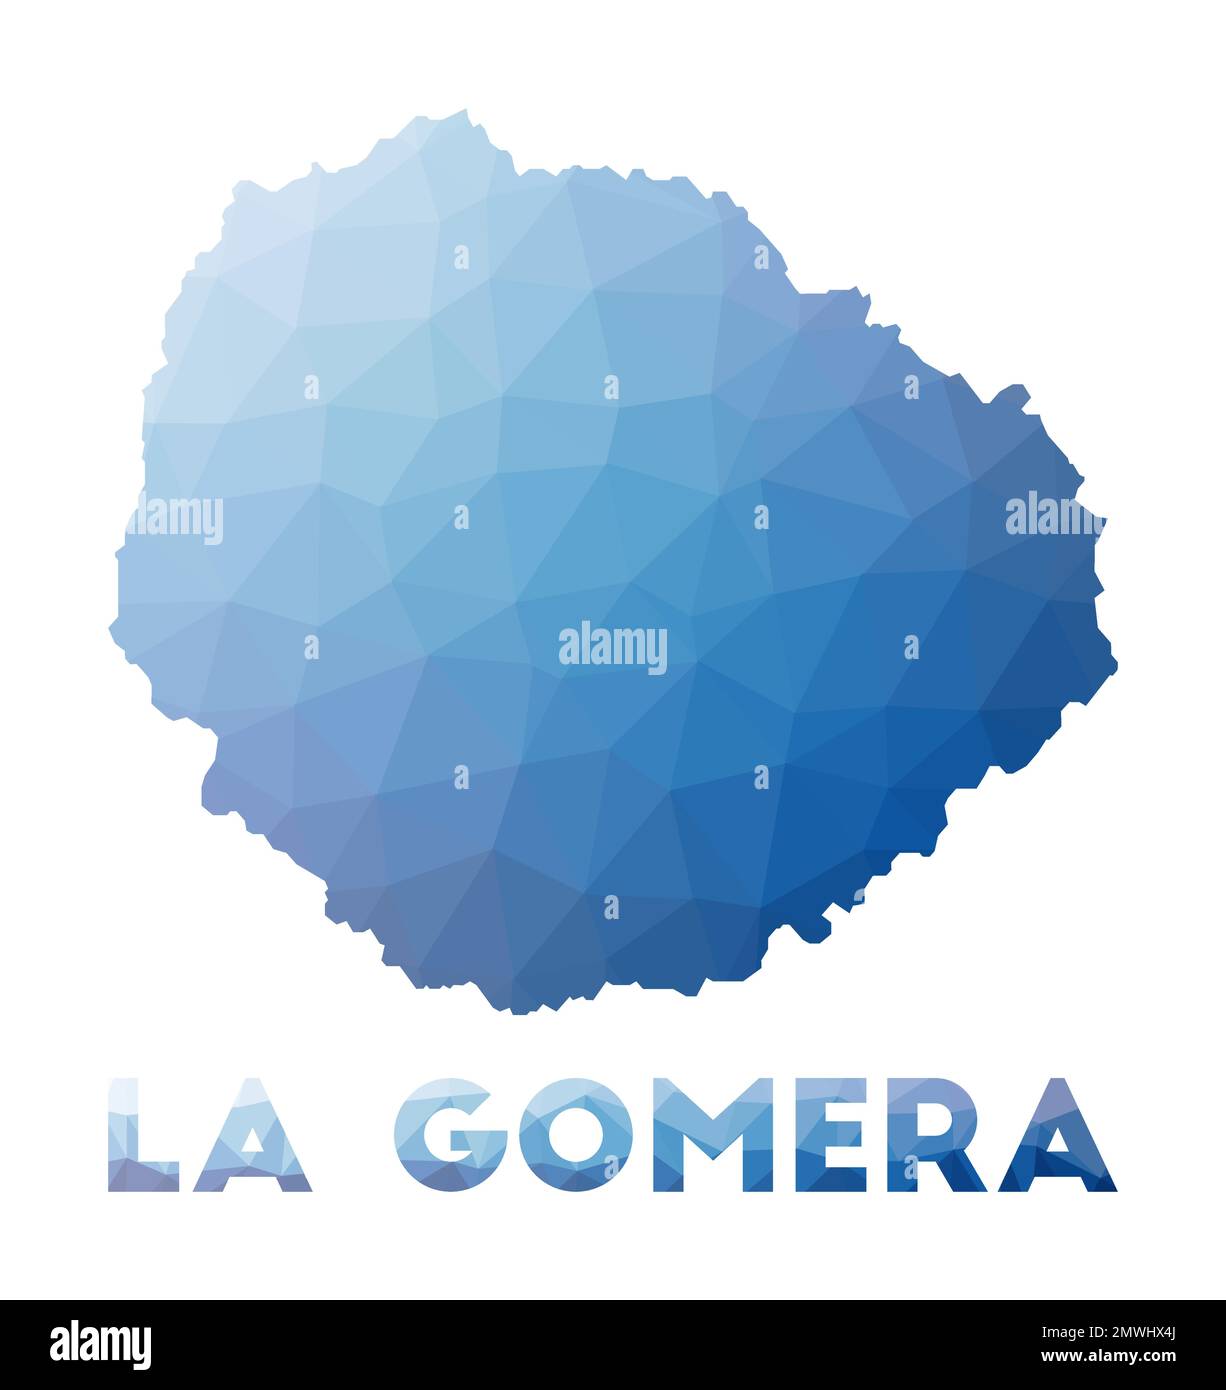 Niedrige Poly-Karte von La Gomera. Geometrische Darstellung der Insel. Polygonale Karte von La Gomera. Technologie, Internet, Netzwerkkonzept. Vektordarstellung. Stock Vektor